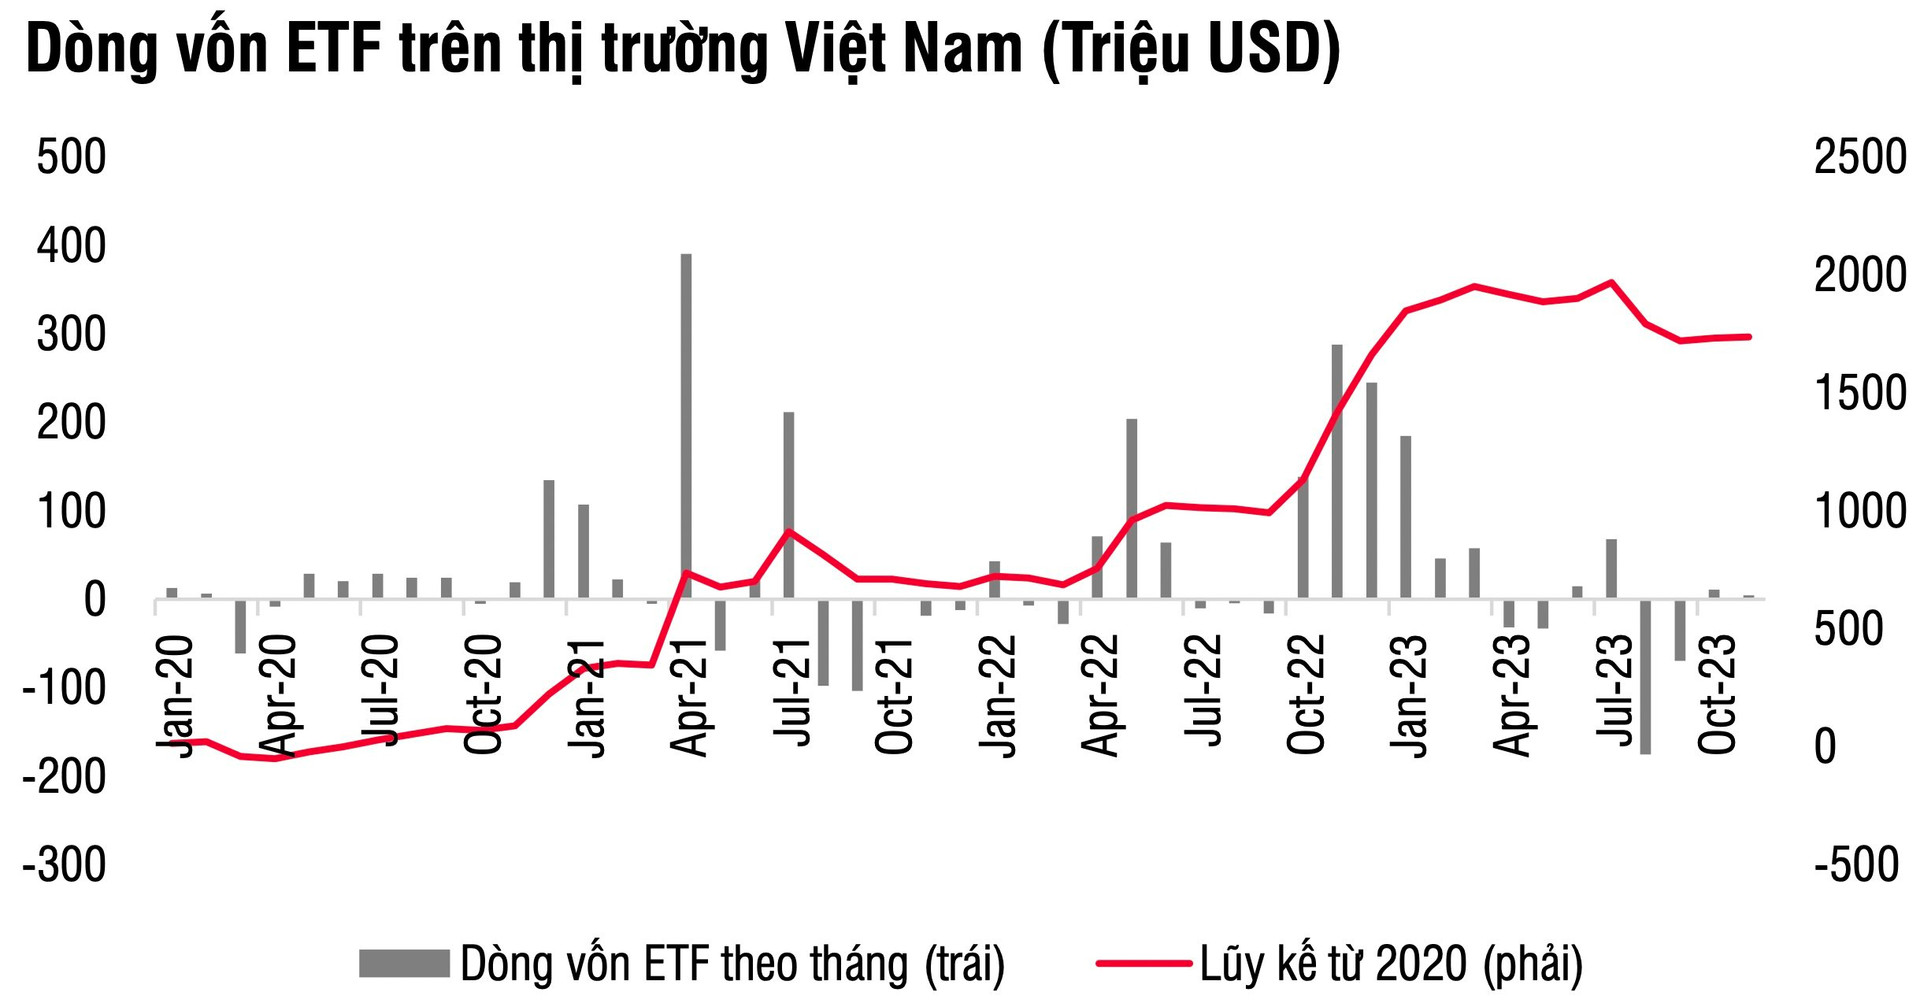 SSIAM VNFIN Lead, VanEck rút ròng mạnh khiến dòng vốn ETF vào Việt Nam chậm lại đáng kể